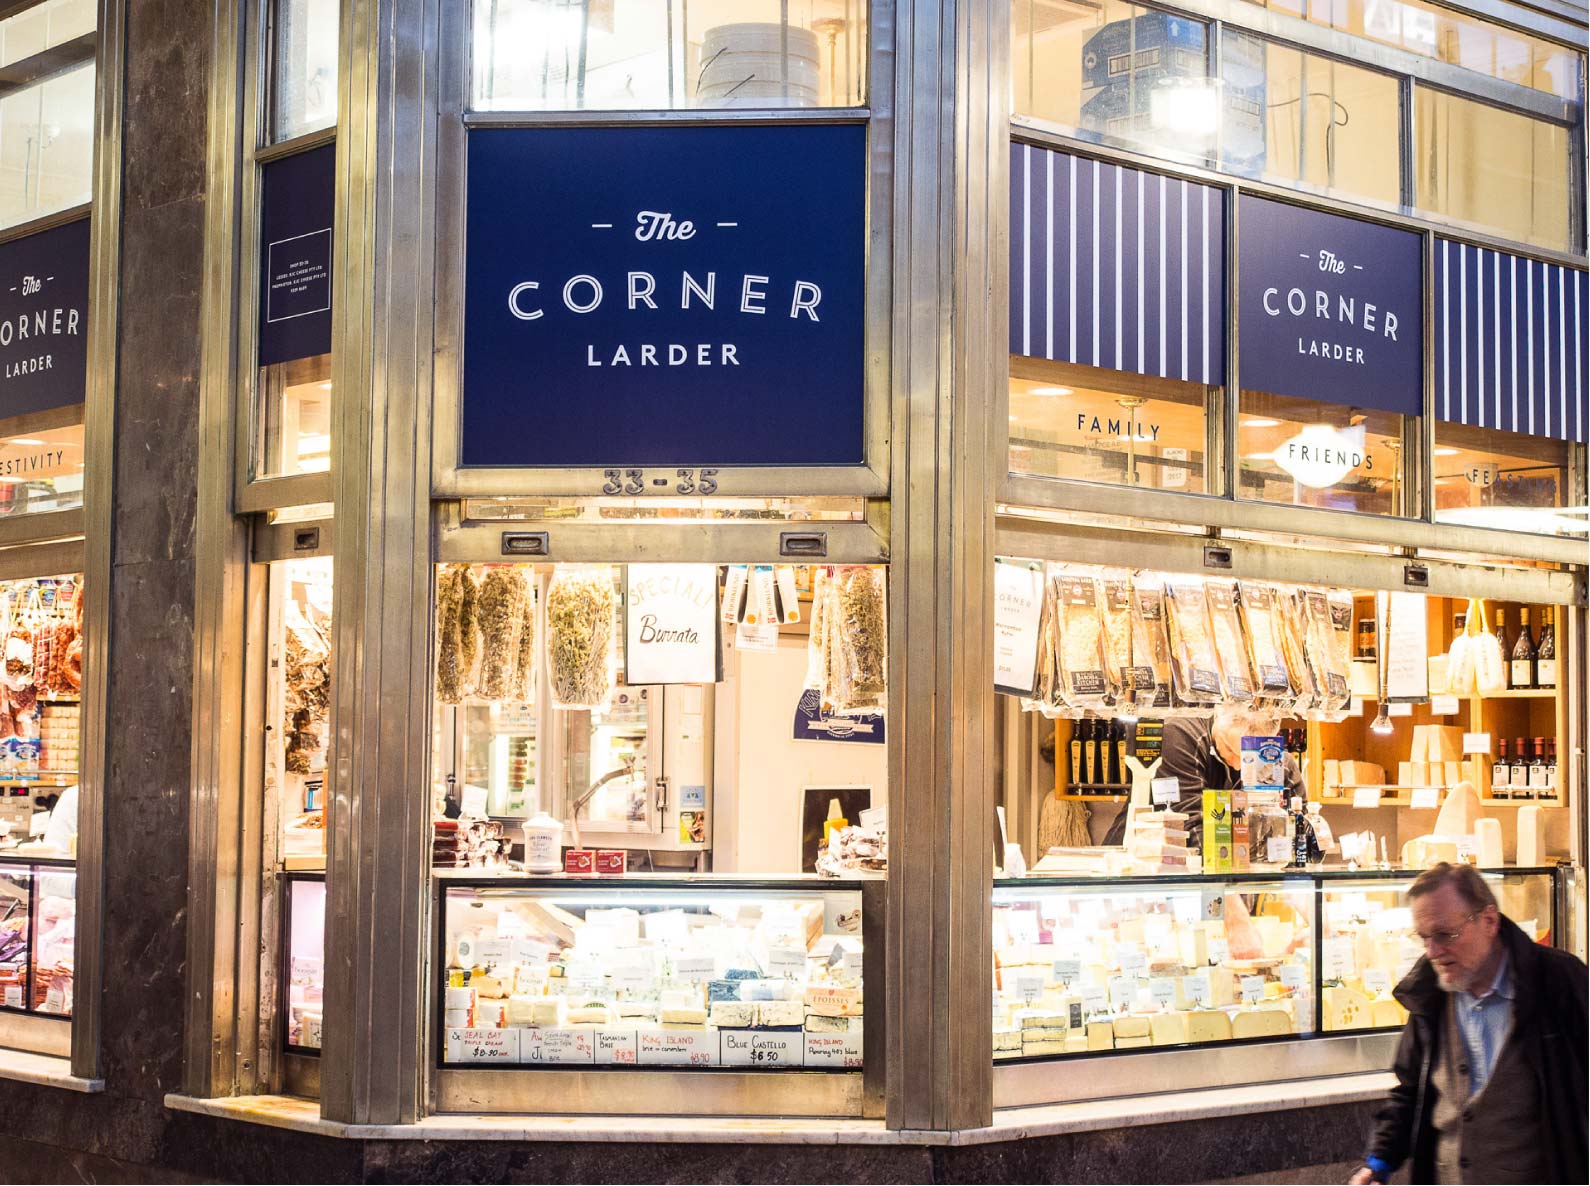 The Corner Larder